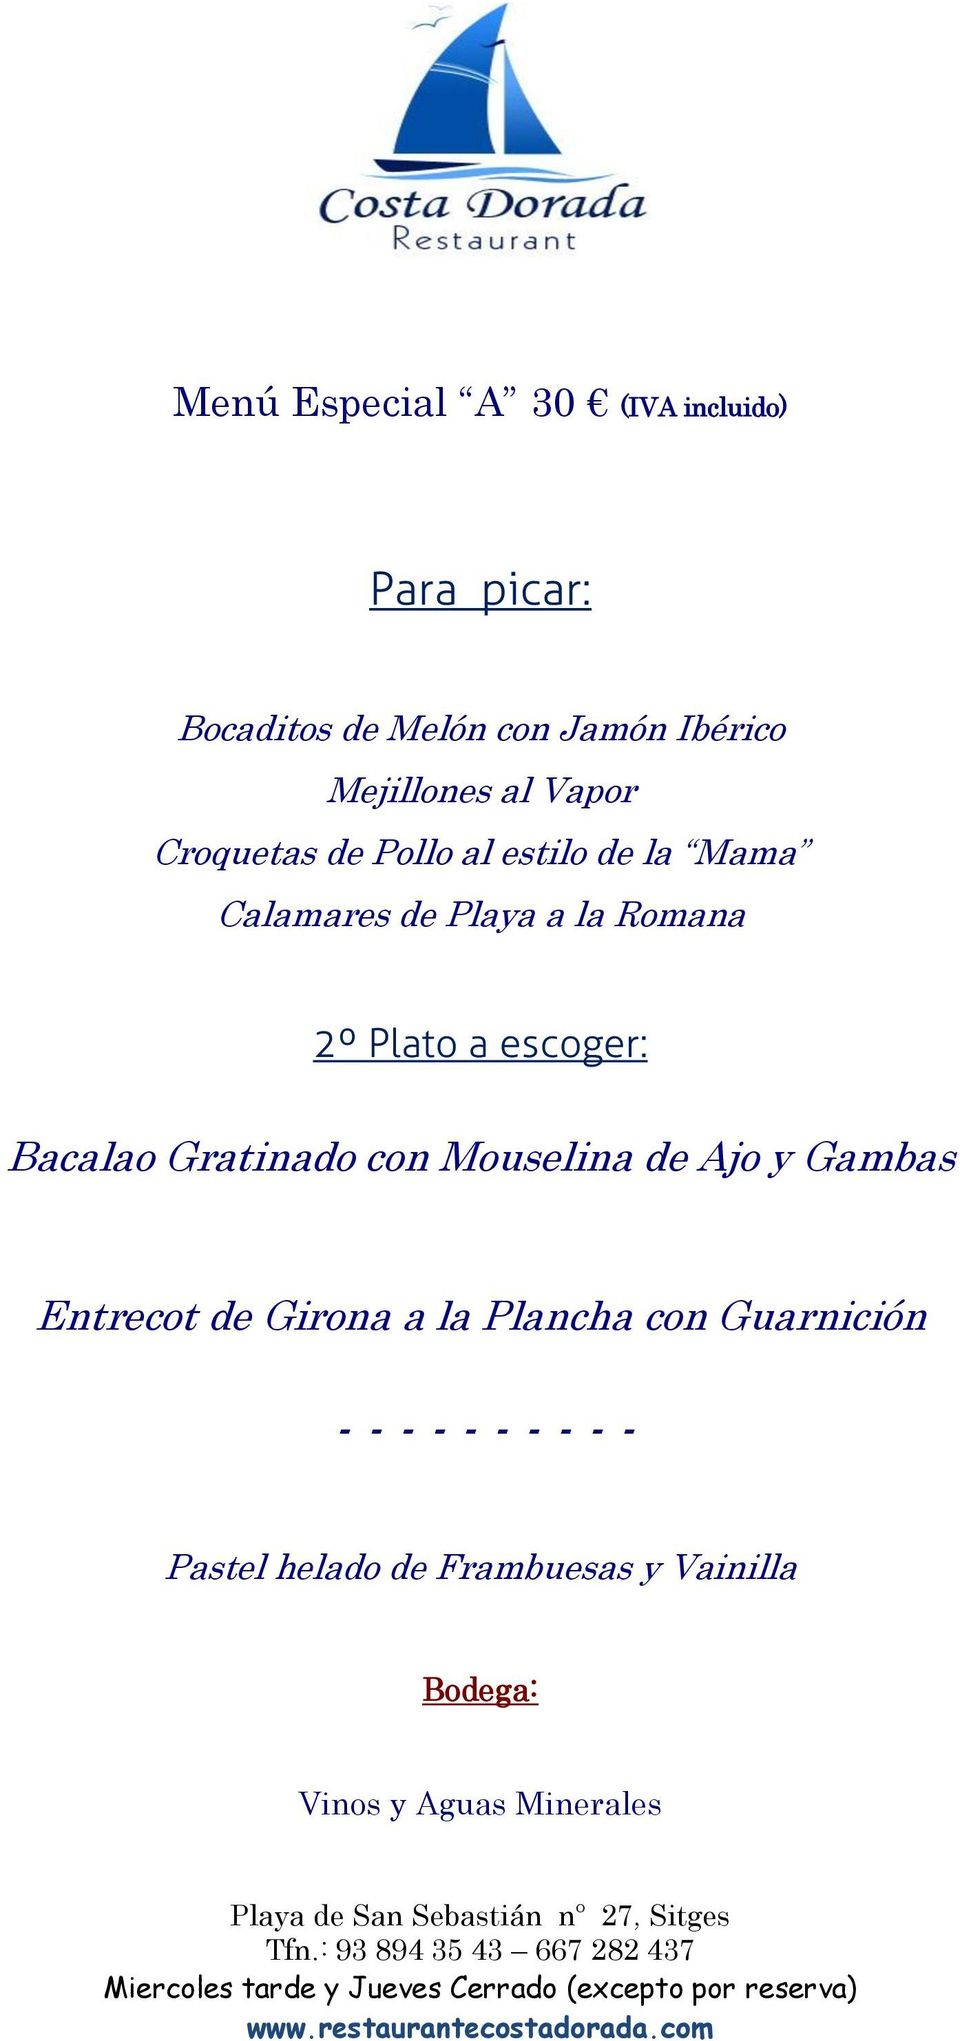 Mouselina de Ajo y Gambas Entrecot de Girona a la Plancha con